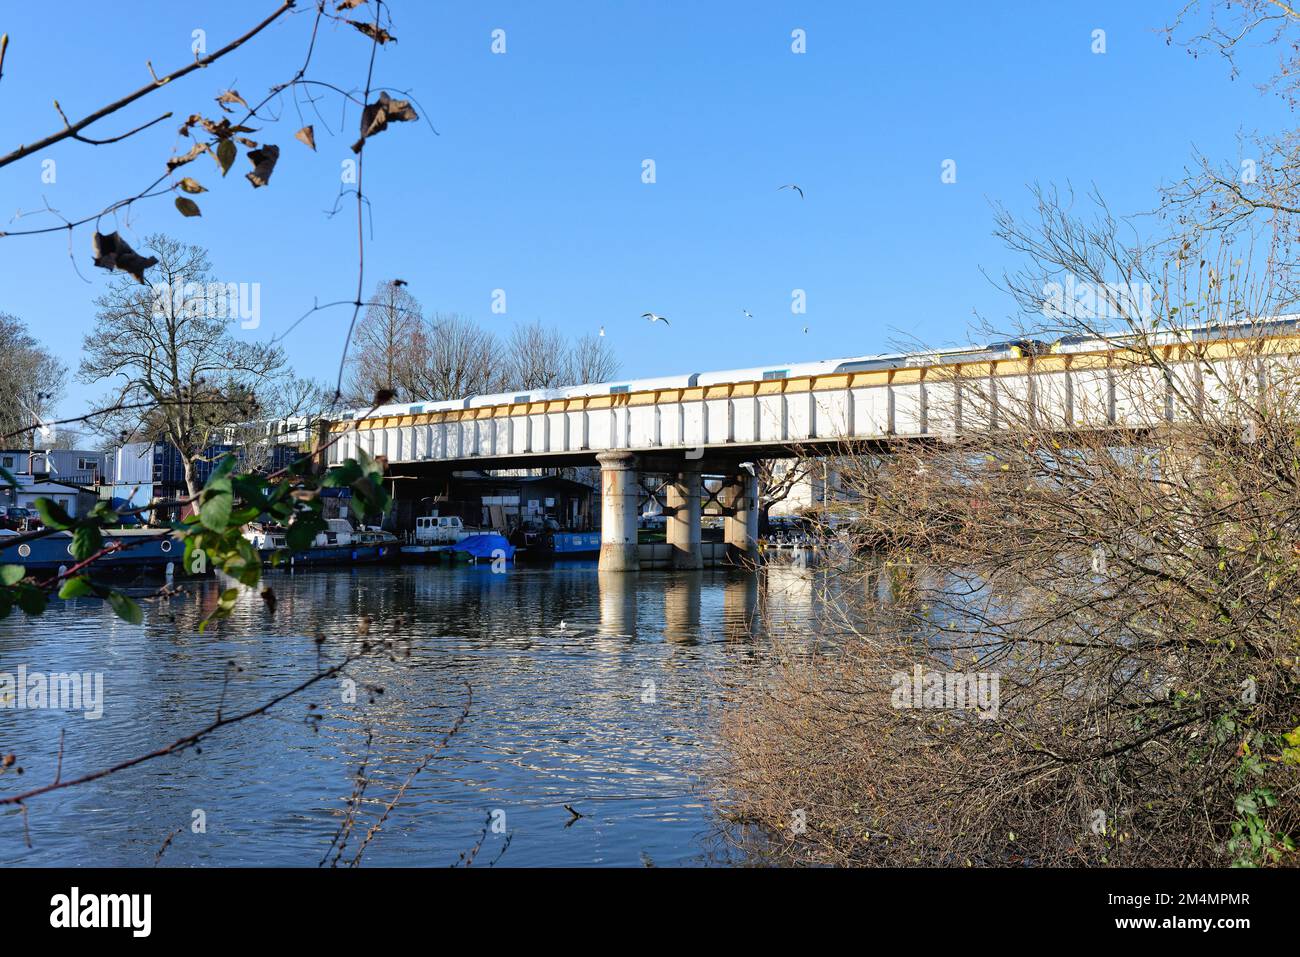 Le pont ferroviaire au-dessus de la Tamise à Staines, un jour d'hiver ensoleillé Surrey Angleterre Royaume-Uni Banque D'Images